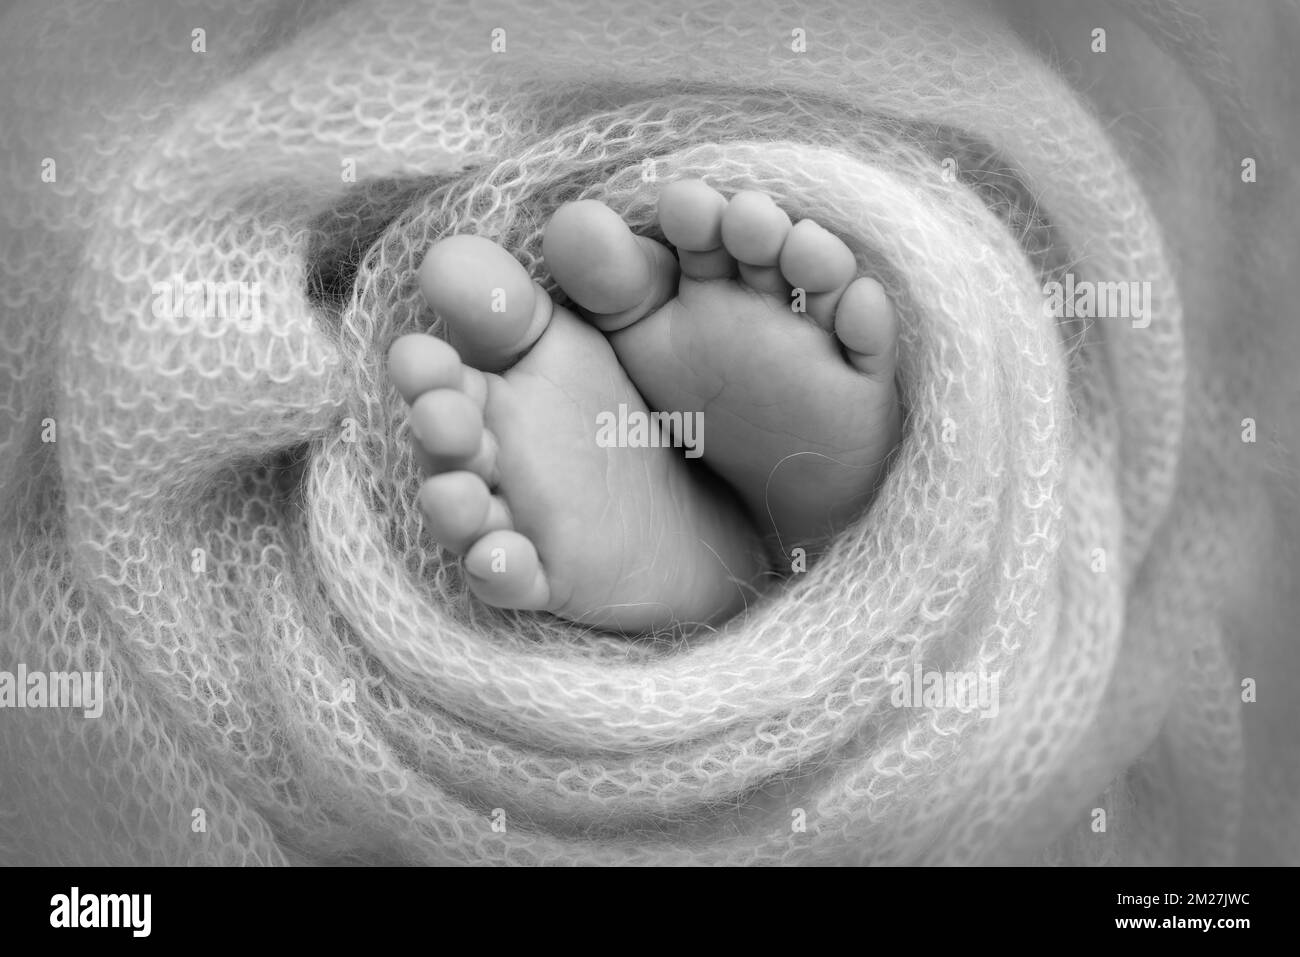 Weiche Füße eines Neugeborenen in einer Decke Nahaufnahme der Zehen, Fersen und Füße eines Babys. Stockfoto